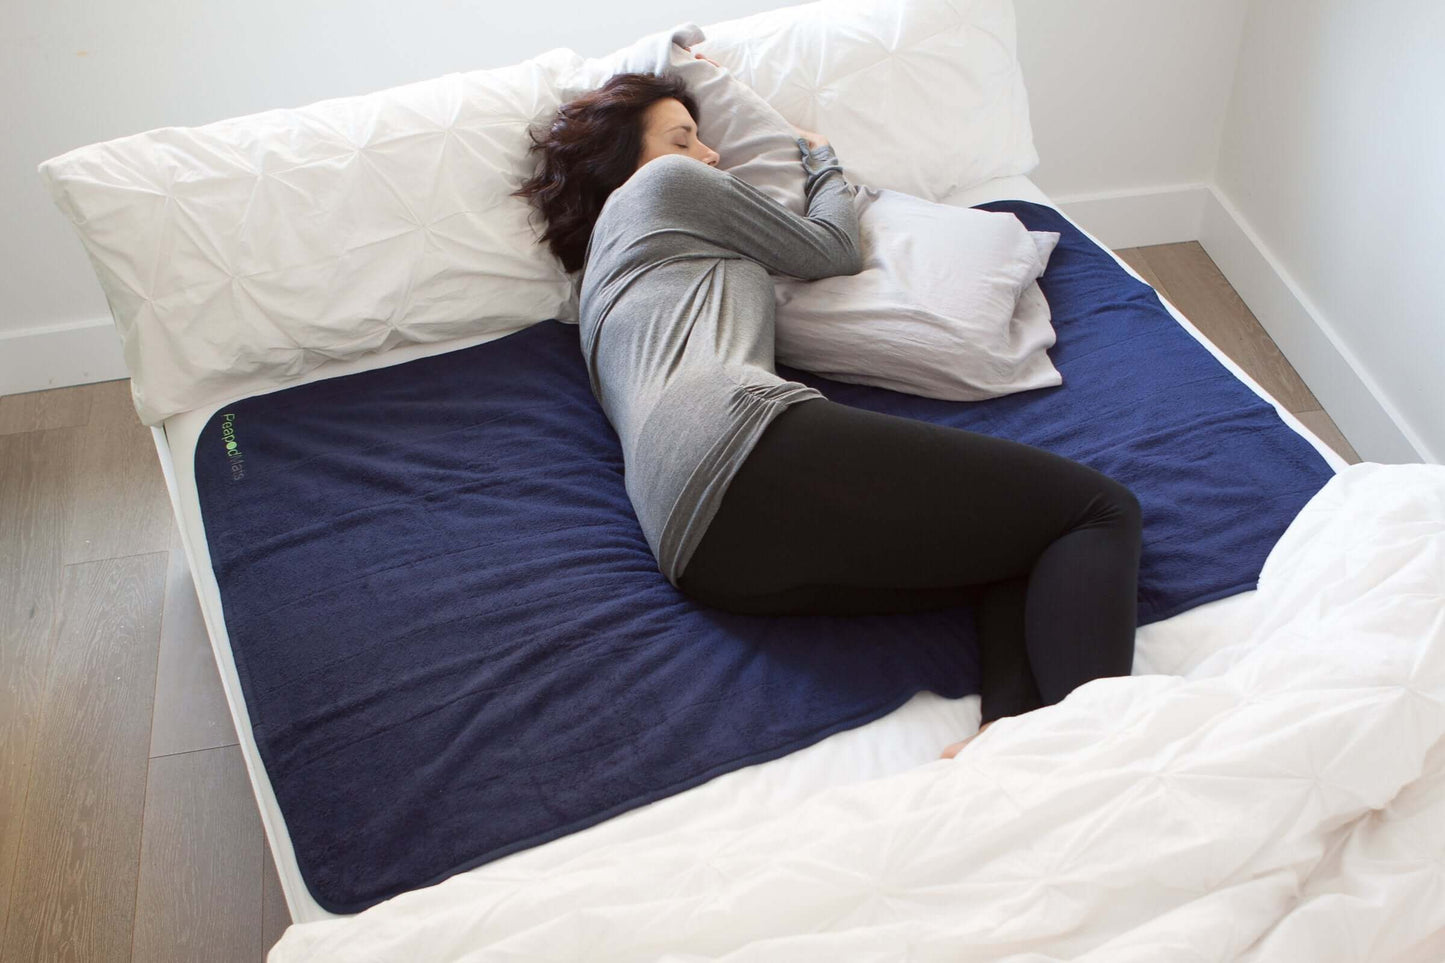 Woman sleeping with large PeapodMats horizontal across double bed